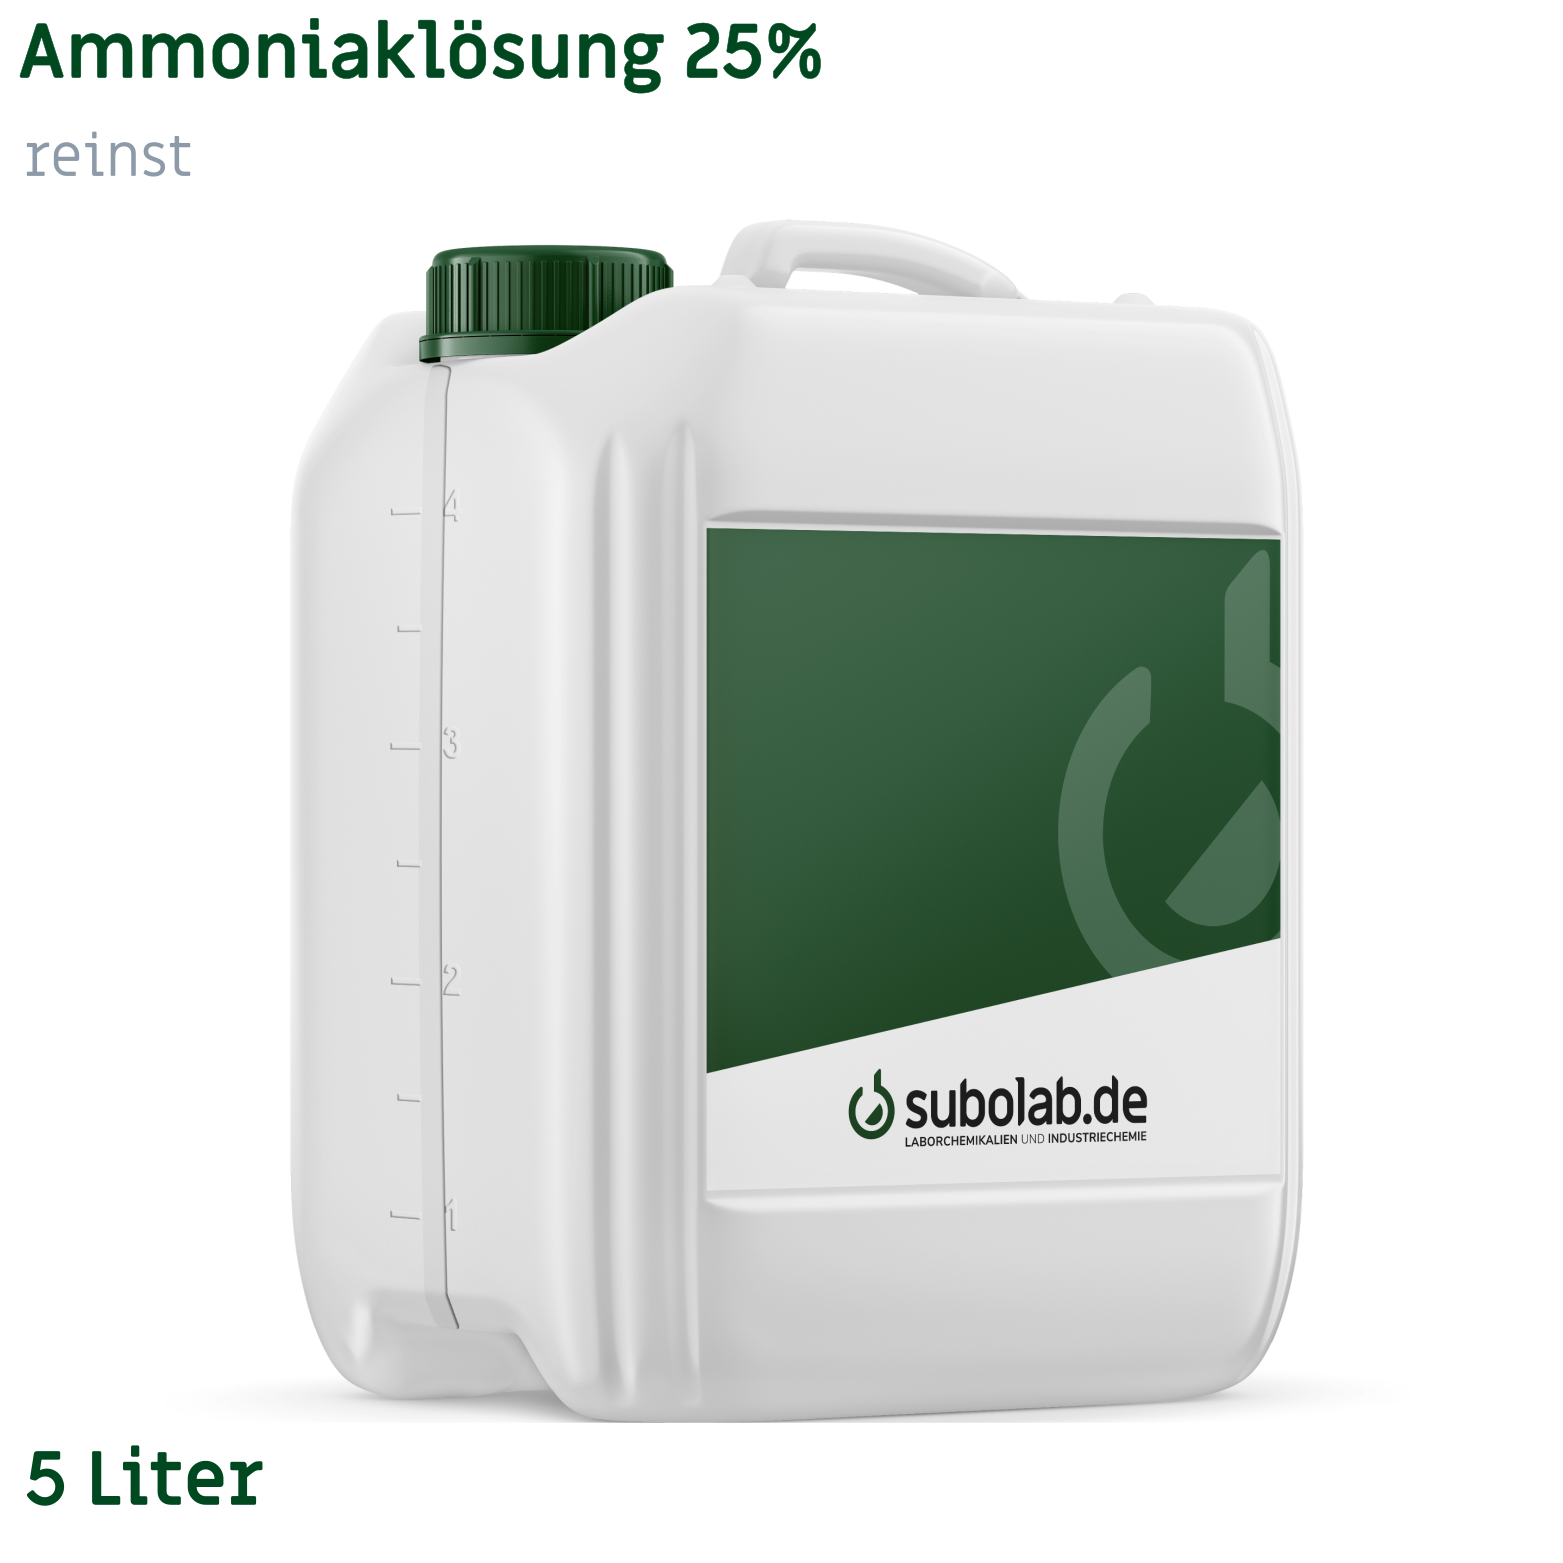 Bild von Ammoniaklösung 25% reinst (5 Liter)